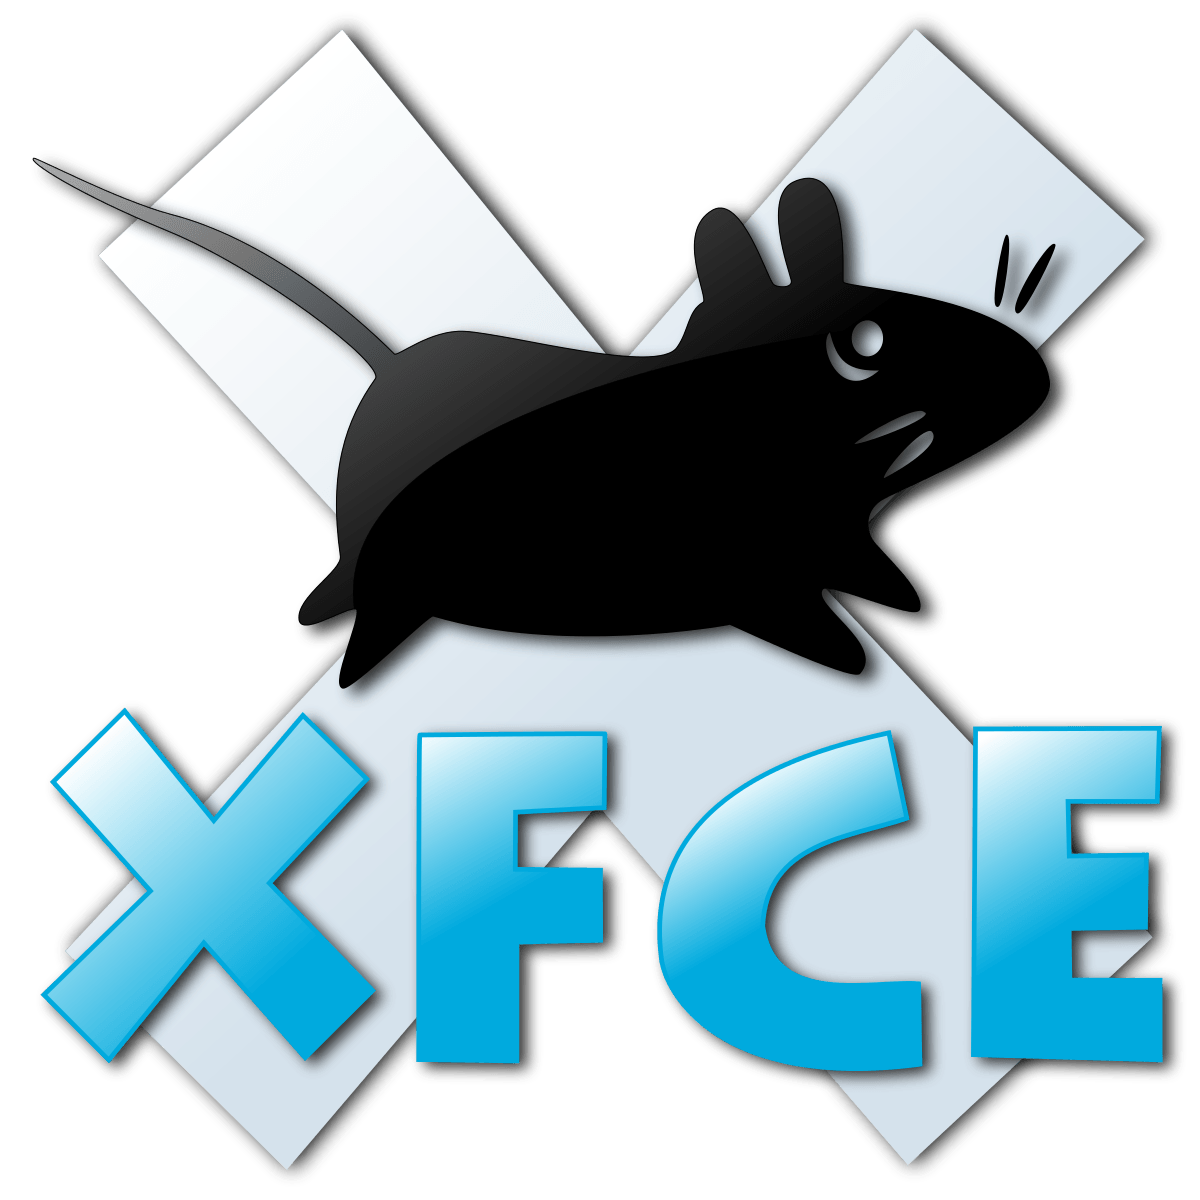 Xfce 4.20 terá suporte ao Wayland mesmo mantendo a compatibilidade com o X11